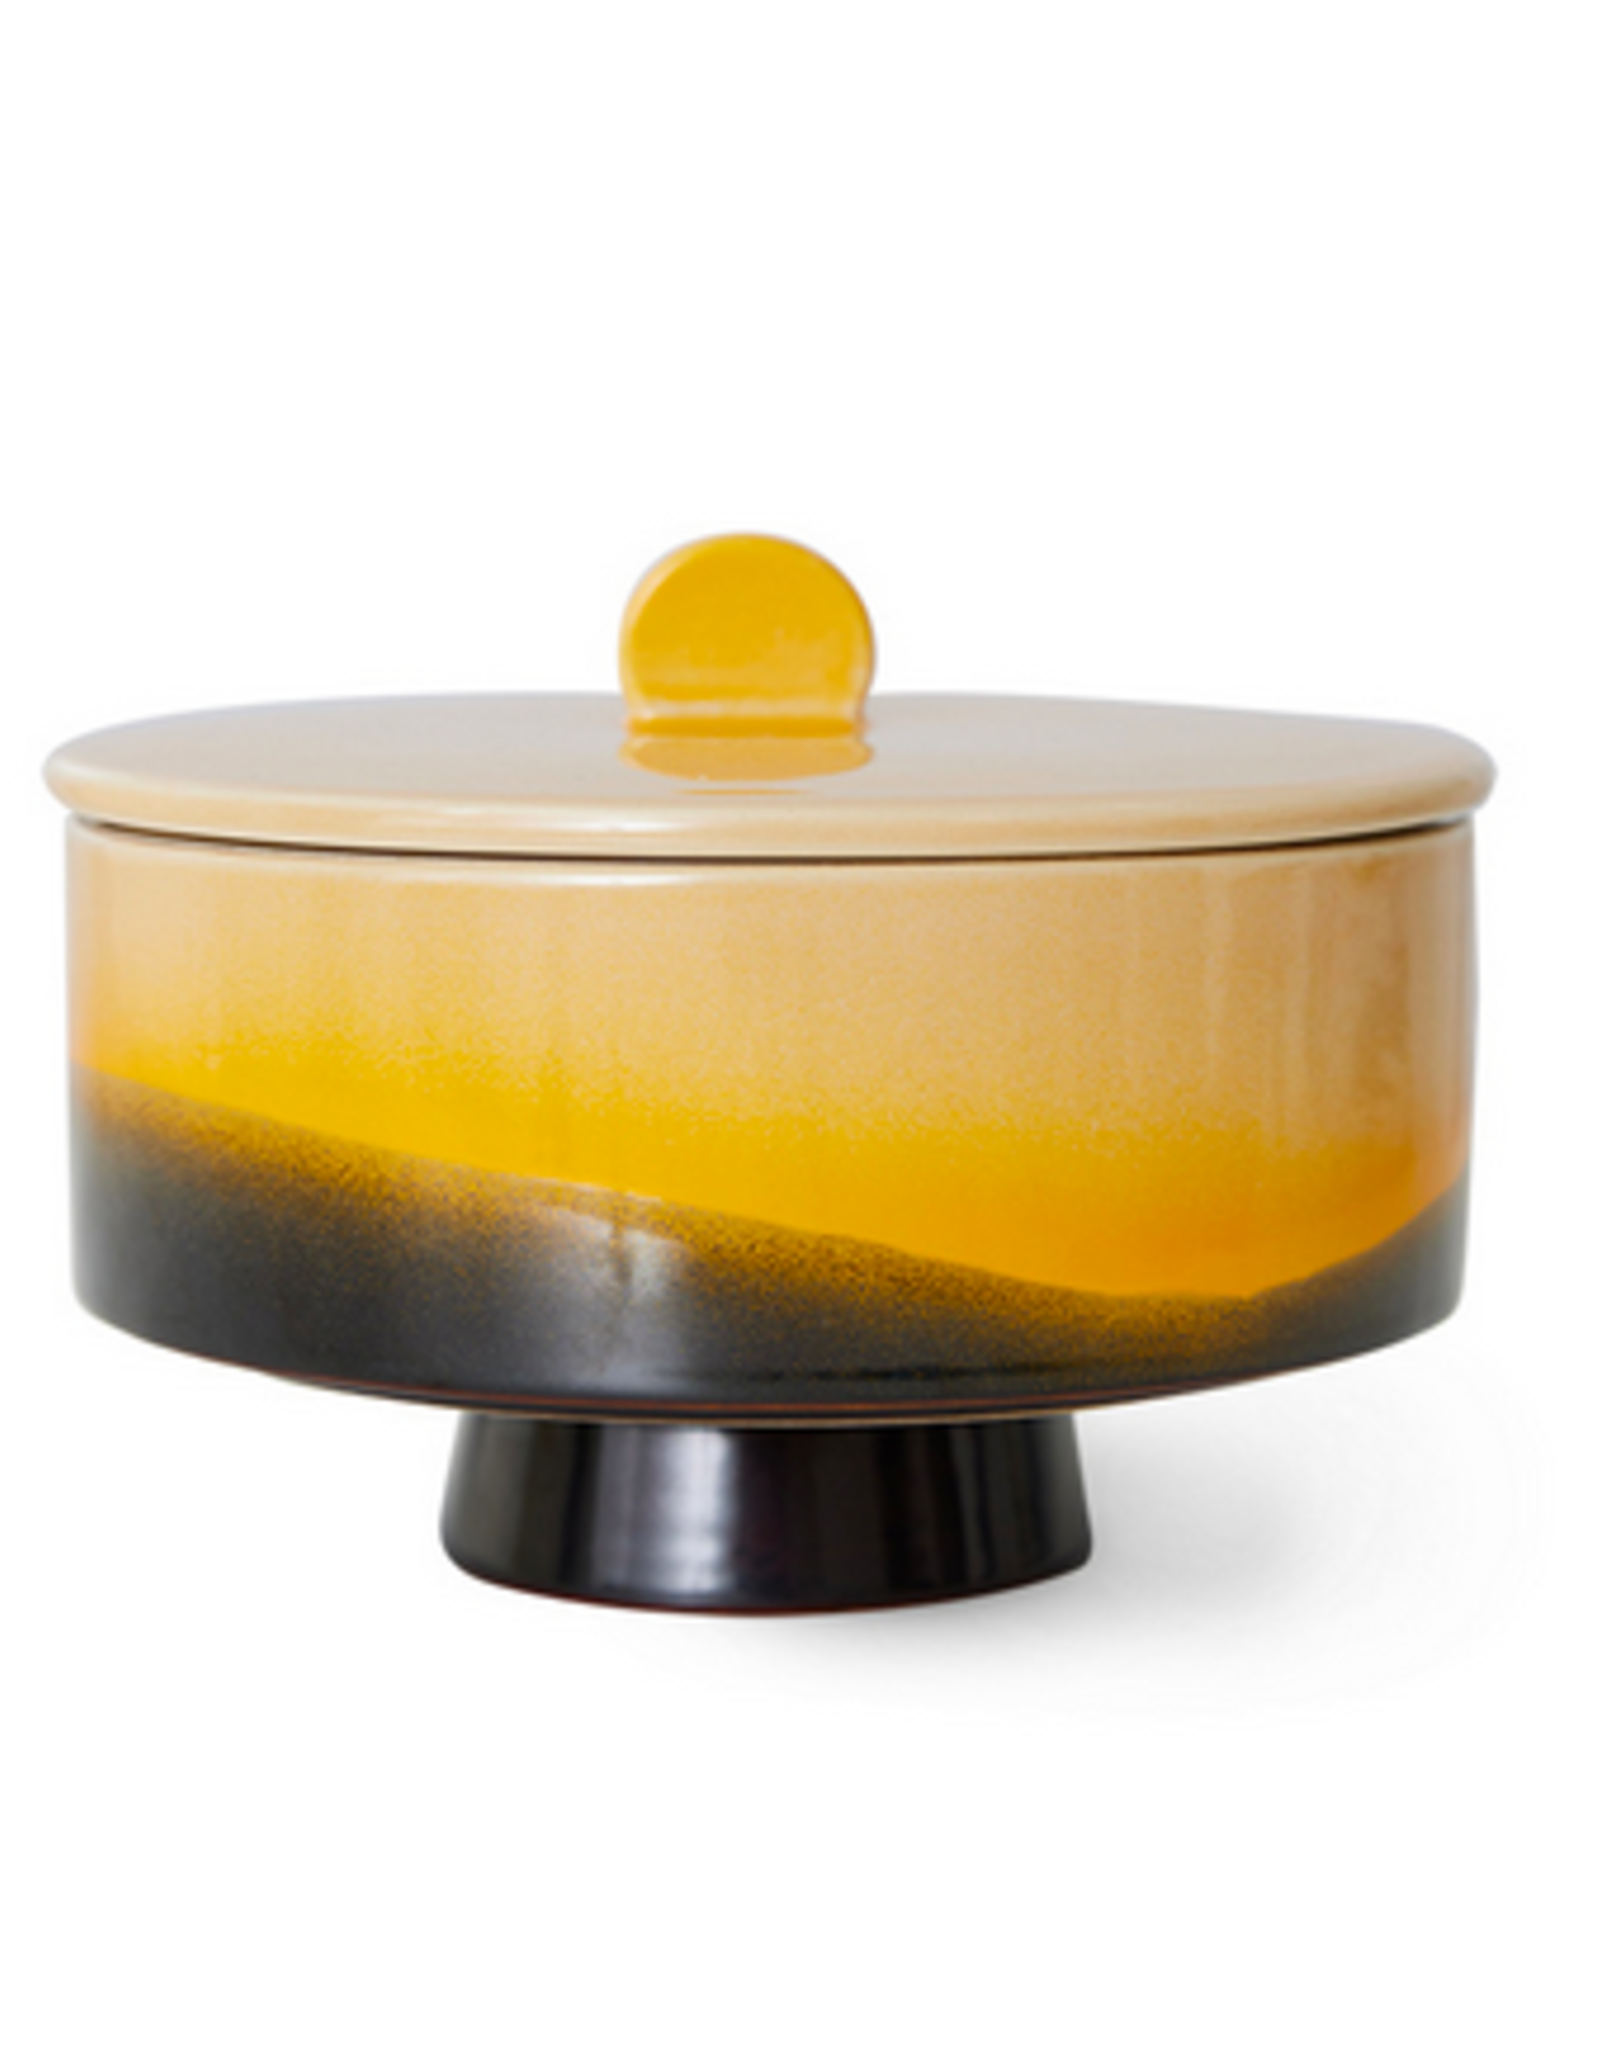 HK Living 70s ceramics: bonbon bowl, sunshine